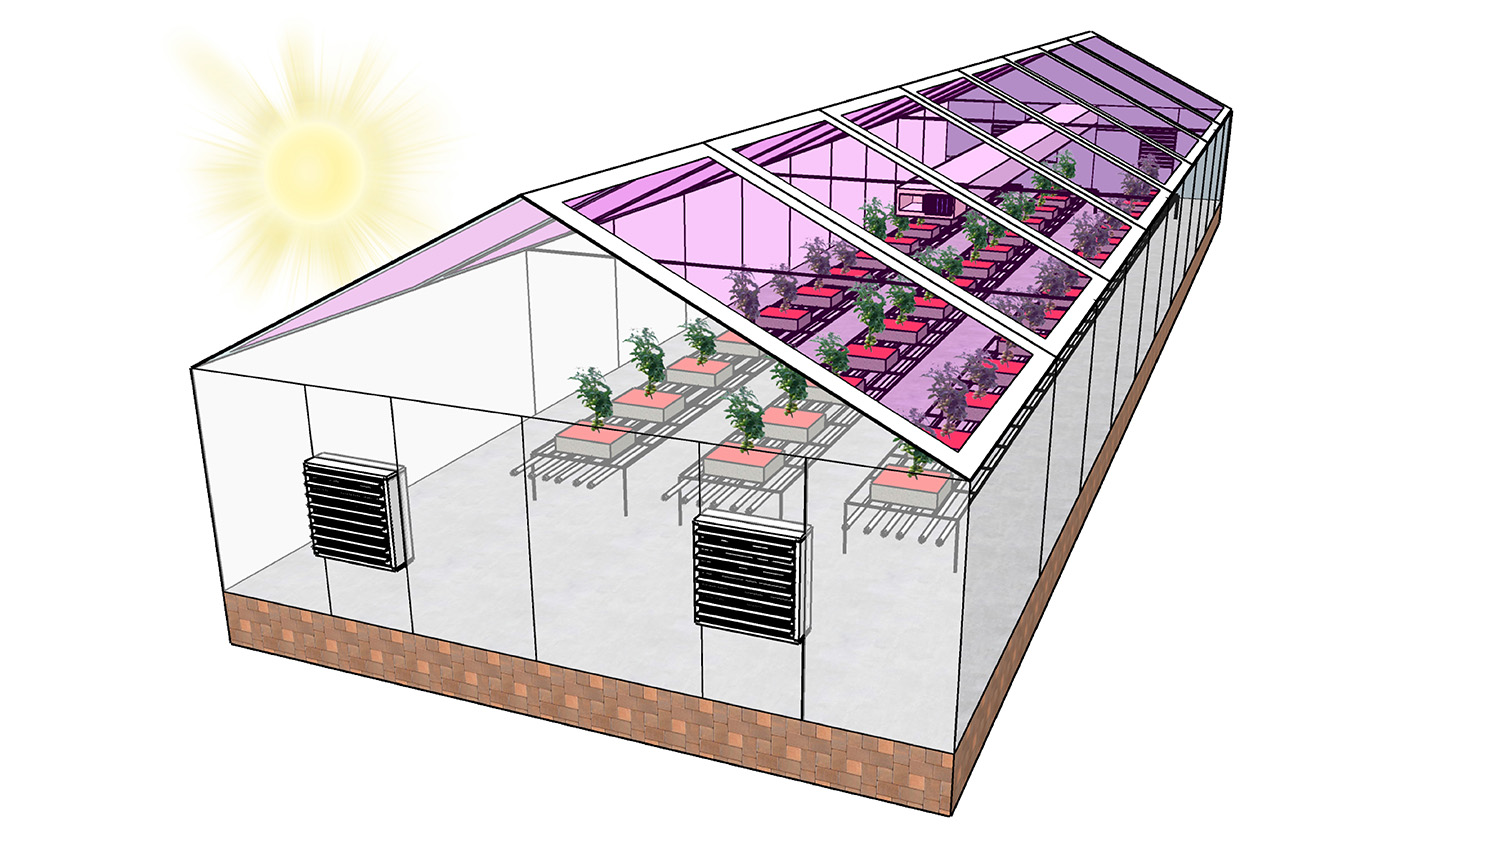 屋顶上有半透明太阳能板的温室示意图。